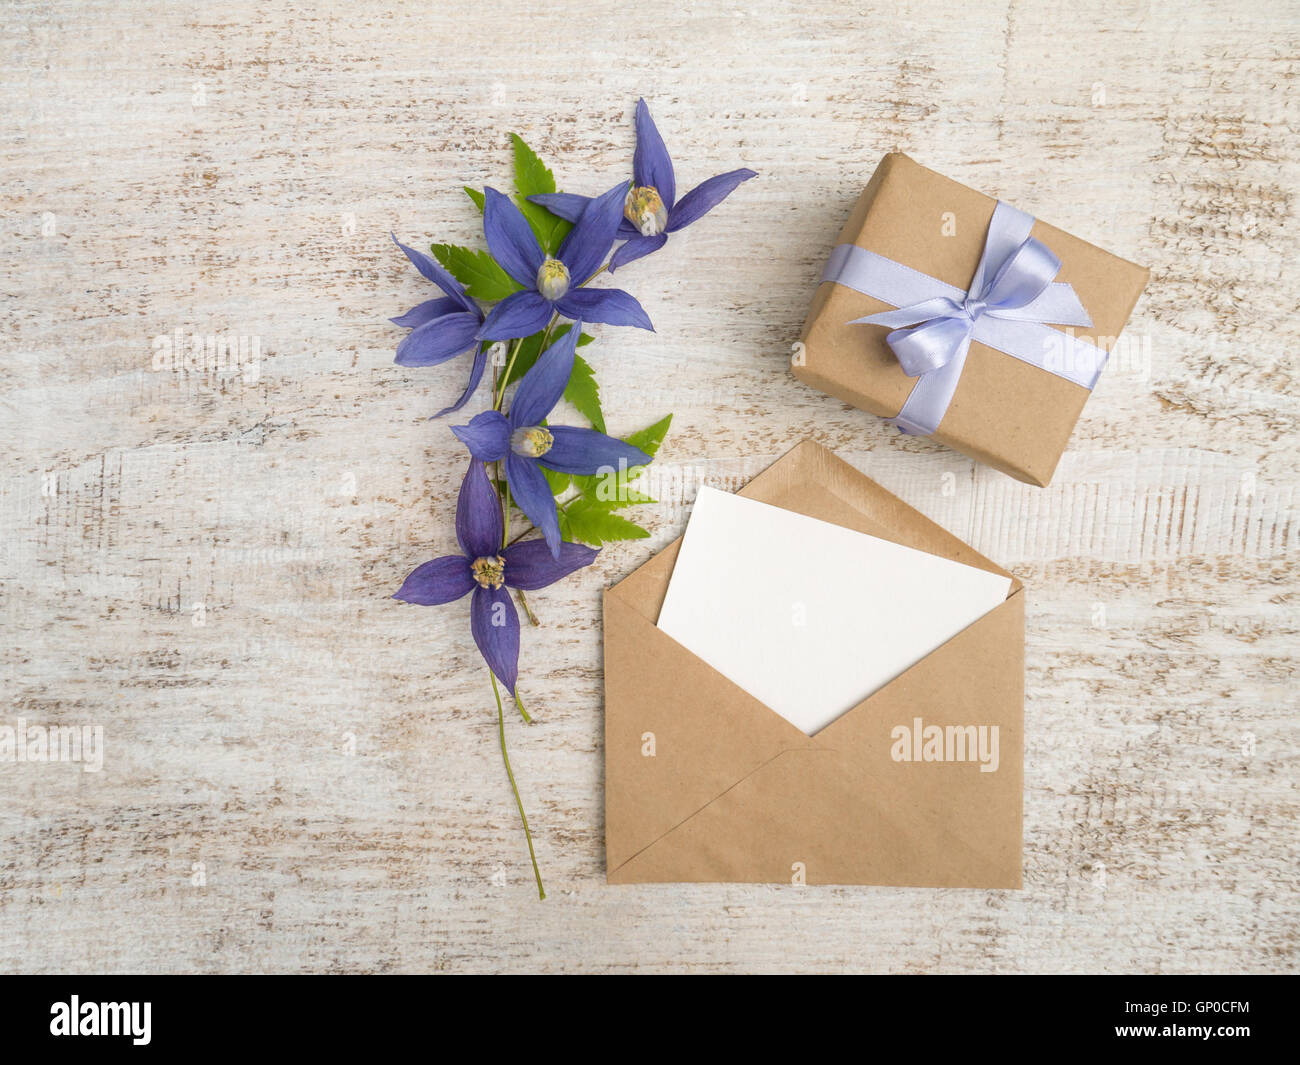 Caja de regalo envuelto en papel kraft marrón con lazo de raso violeta, flores azules y sobres con tarjeta de felicitación en la madera pintada Foto de stock